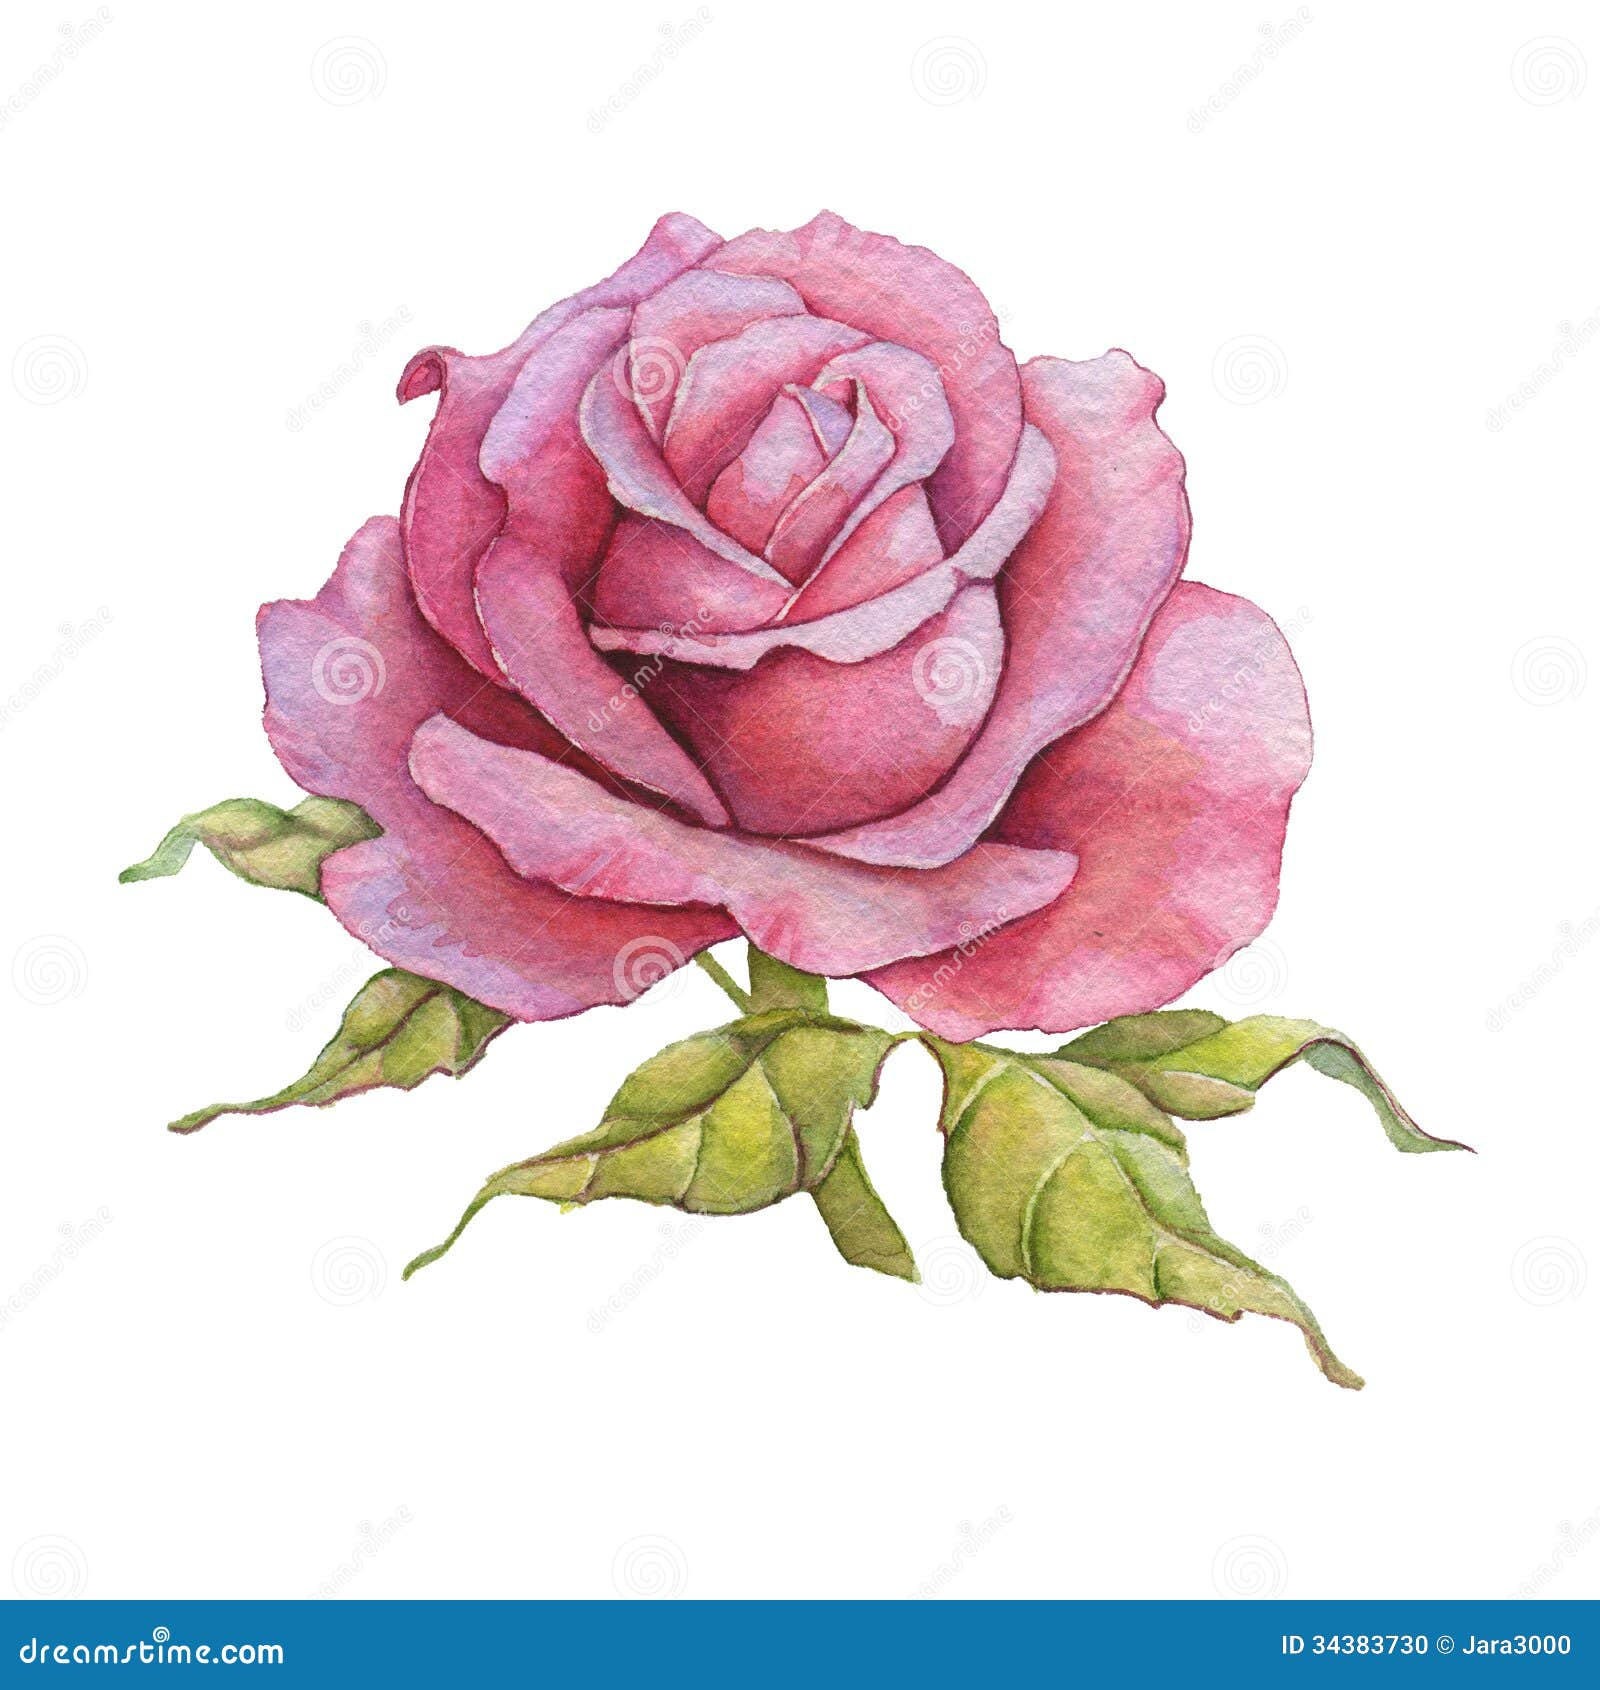 Watercolor rose stock illustration. Illustration of leaf - 34383730